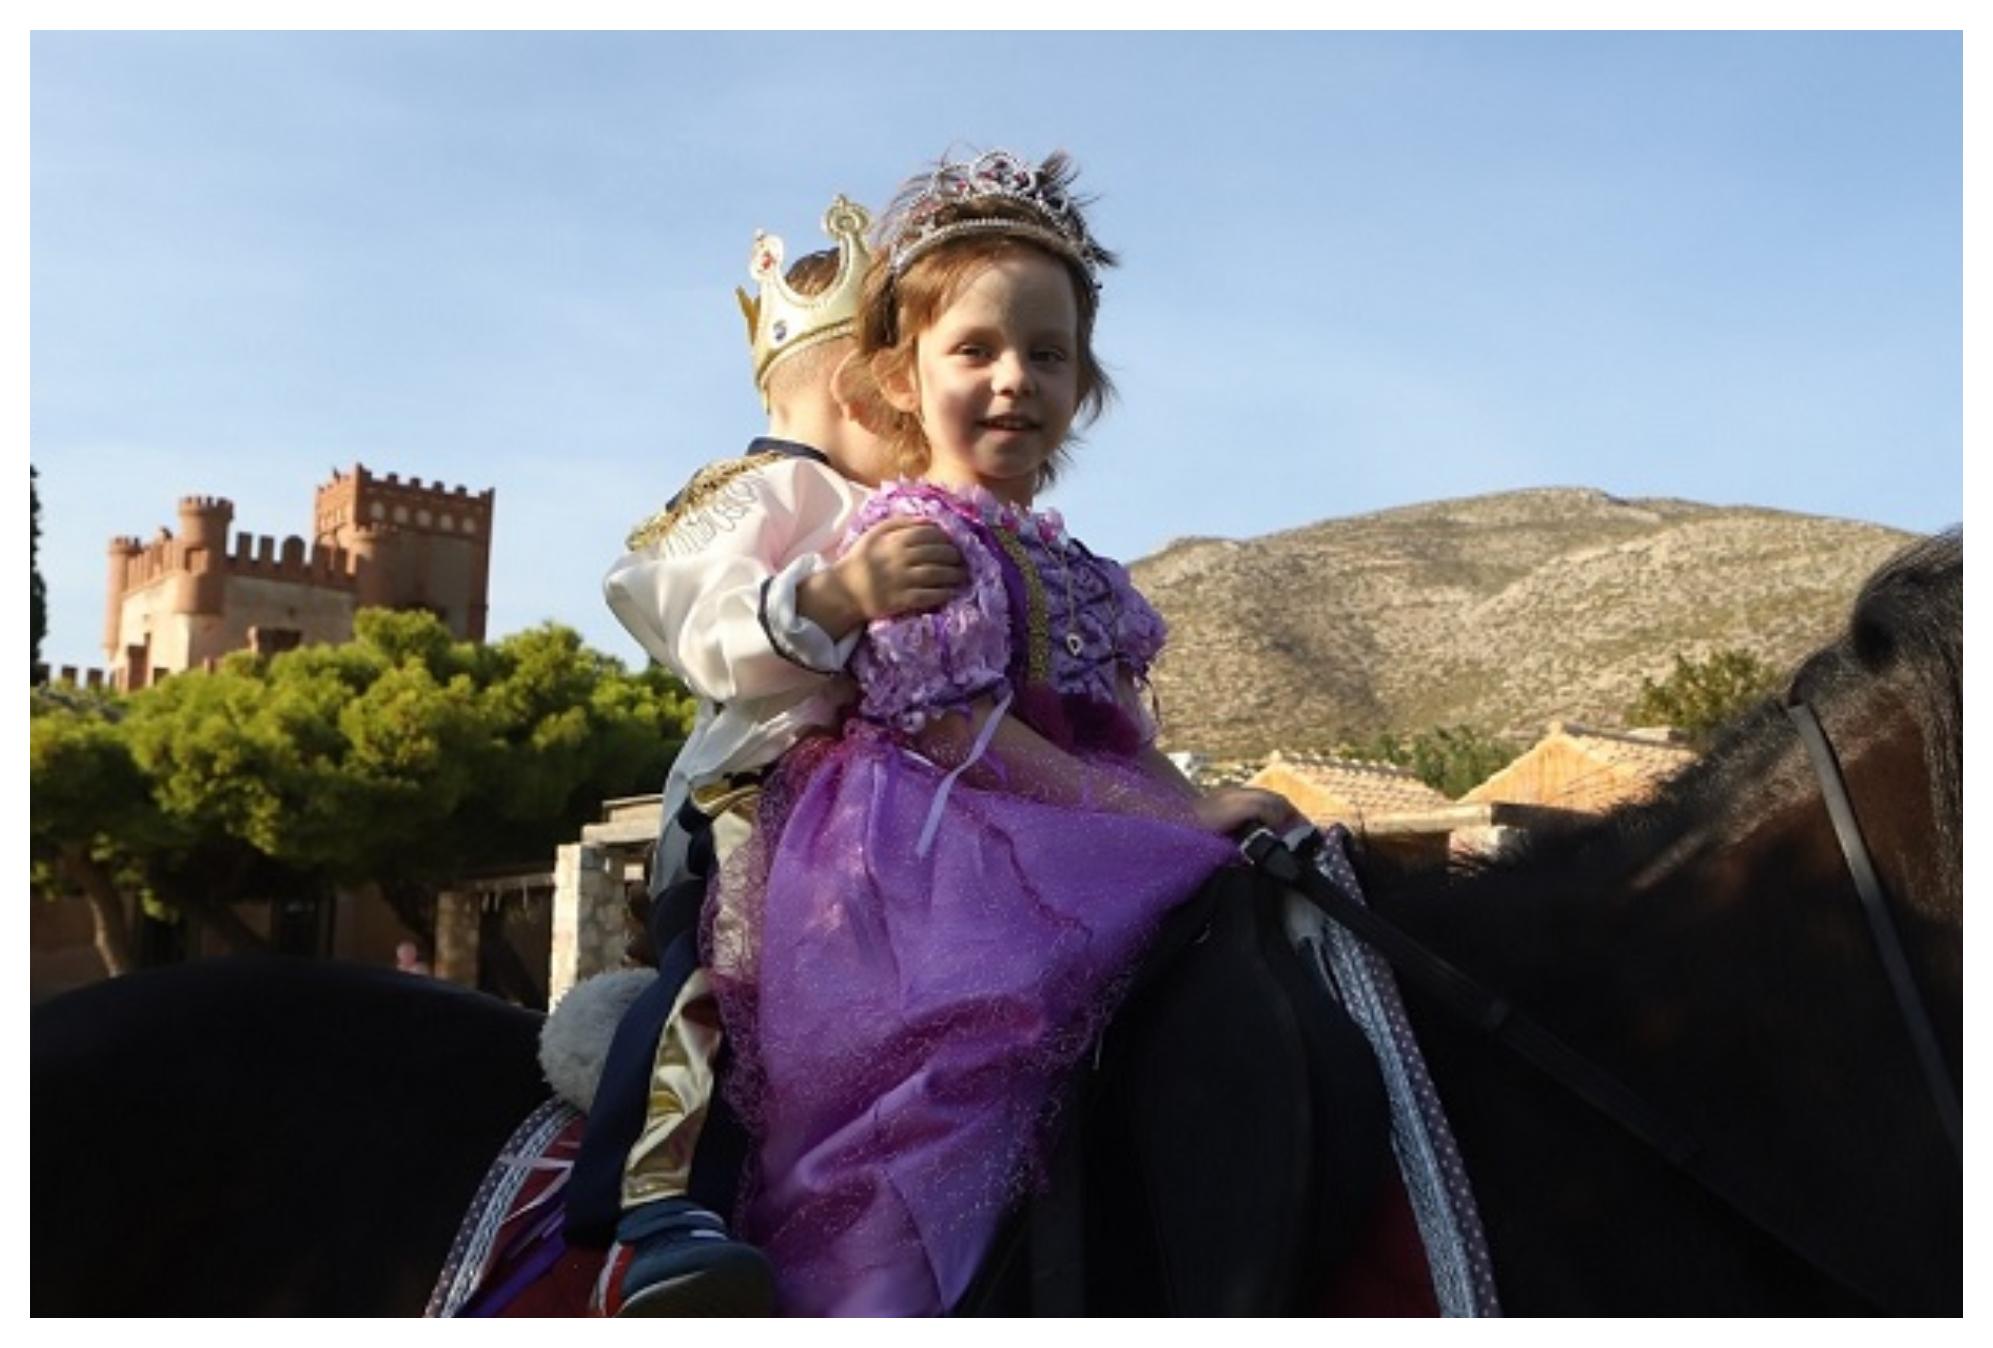 Η μικρή Ειρήνη νίκησε τον καρκίνο και πραγματοποίησε το όνειρο της – Έγινε πριγκίπισσα